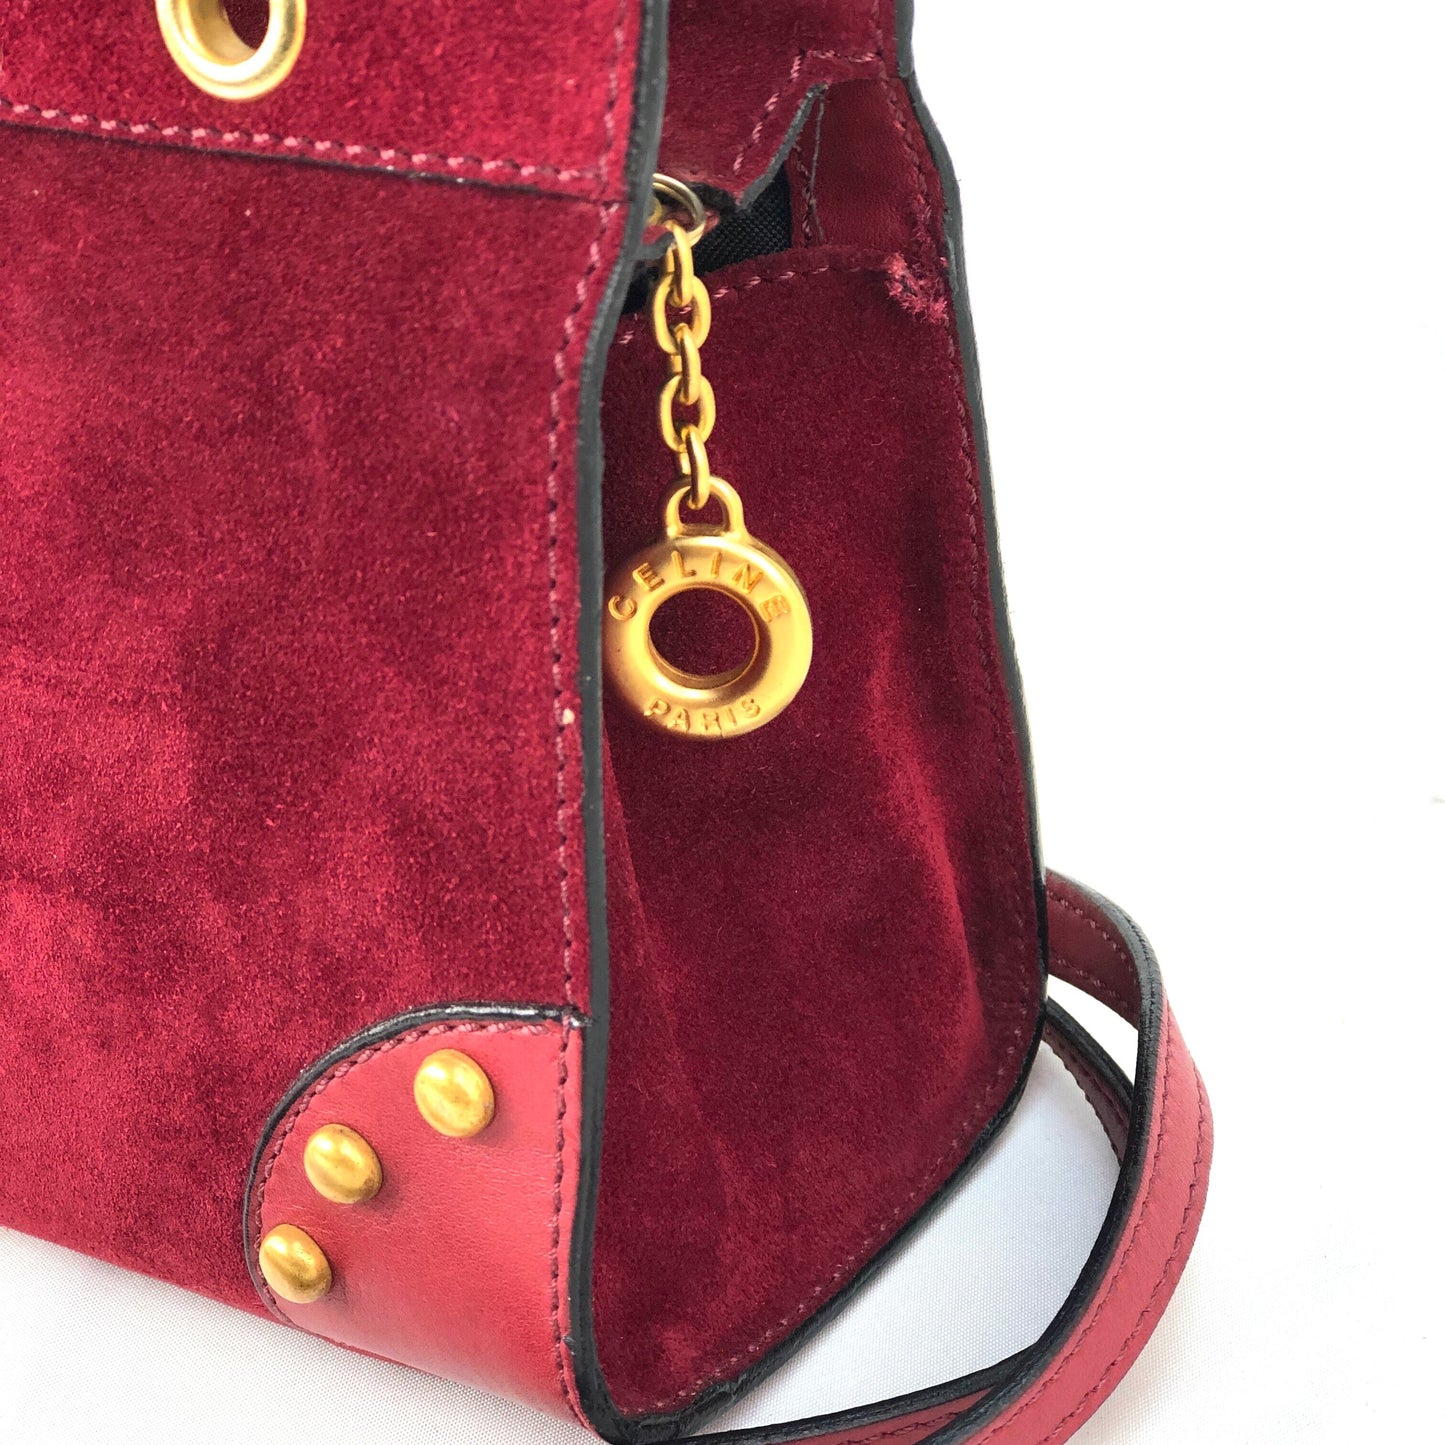 CELINE studs mini bag 2way square suede leather shoulder bag handbag wine red vintage zp7fsi